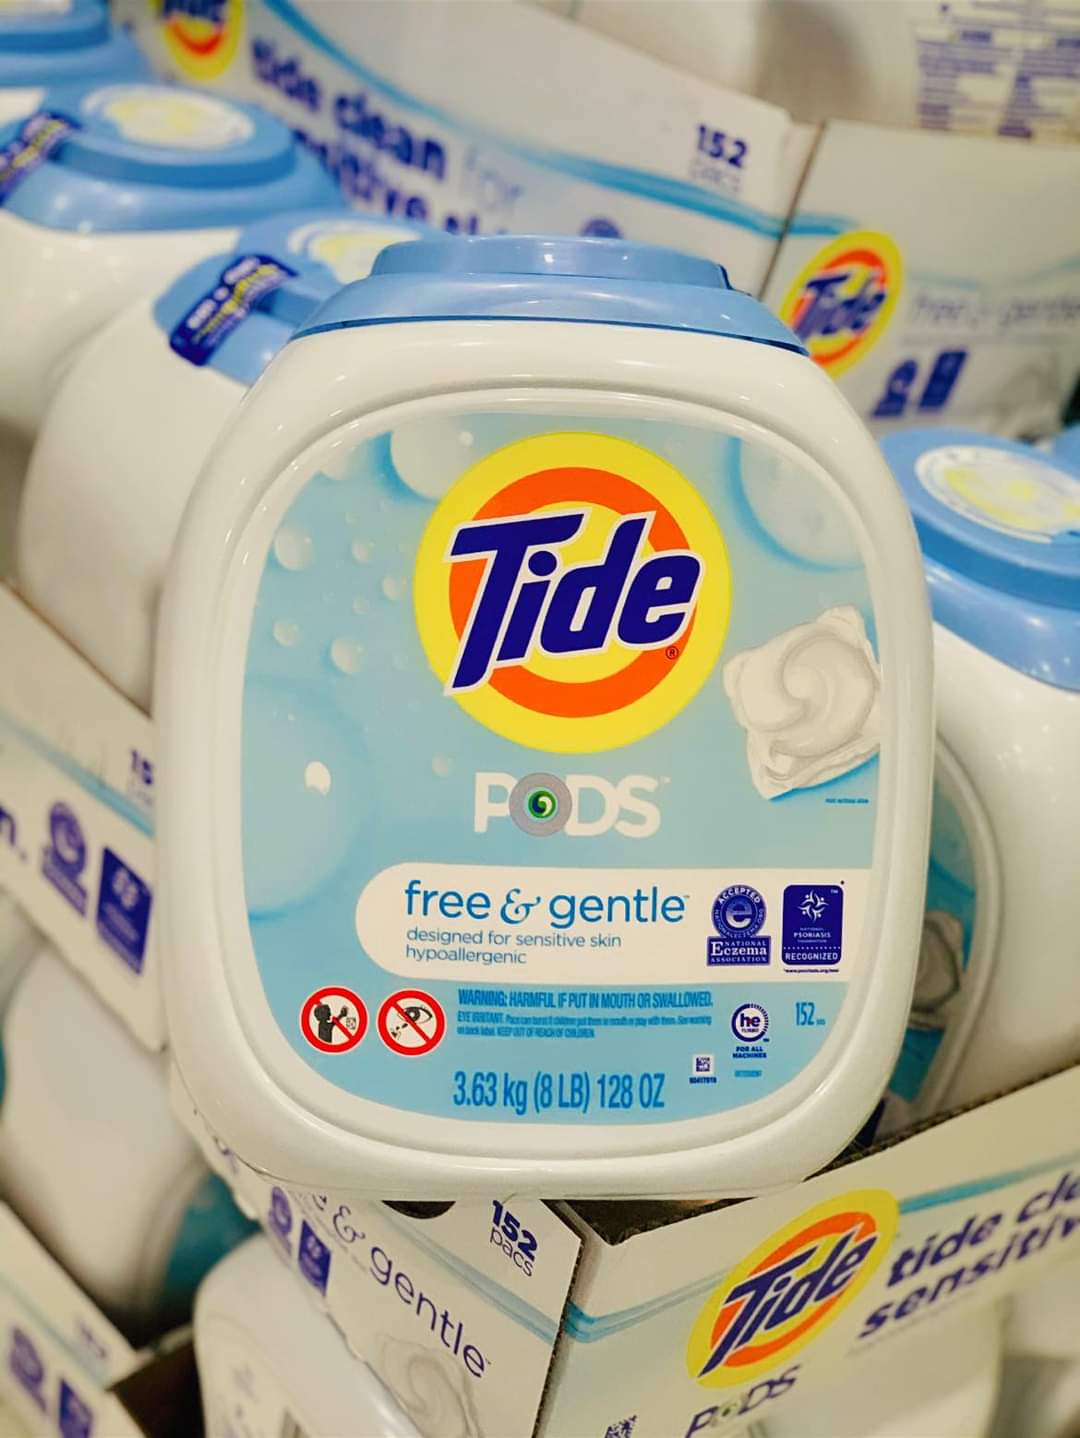 Viên giặt Tide Pods dành cho da nhạy cảm Free & Gentle 152 viên